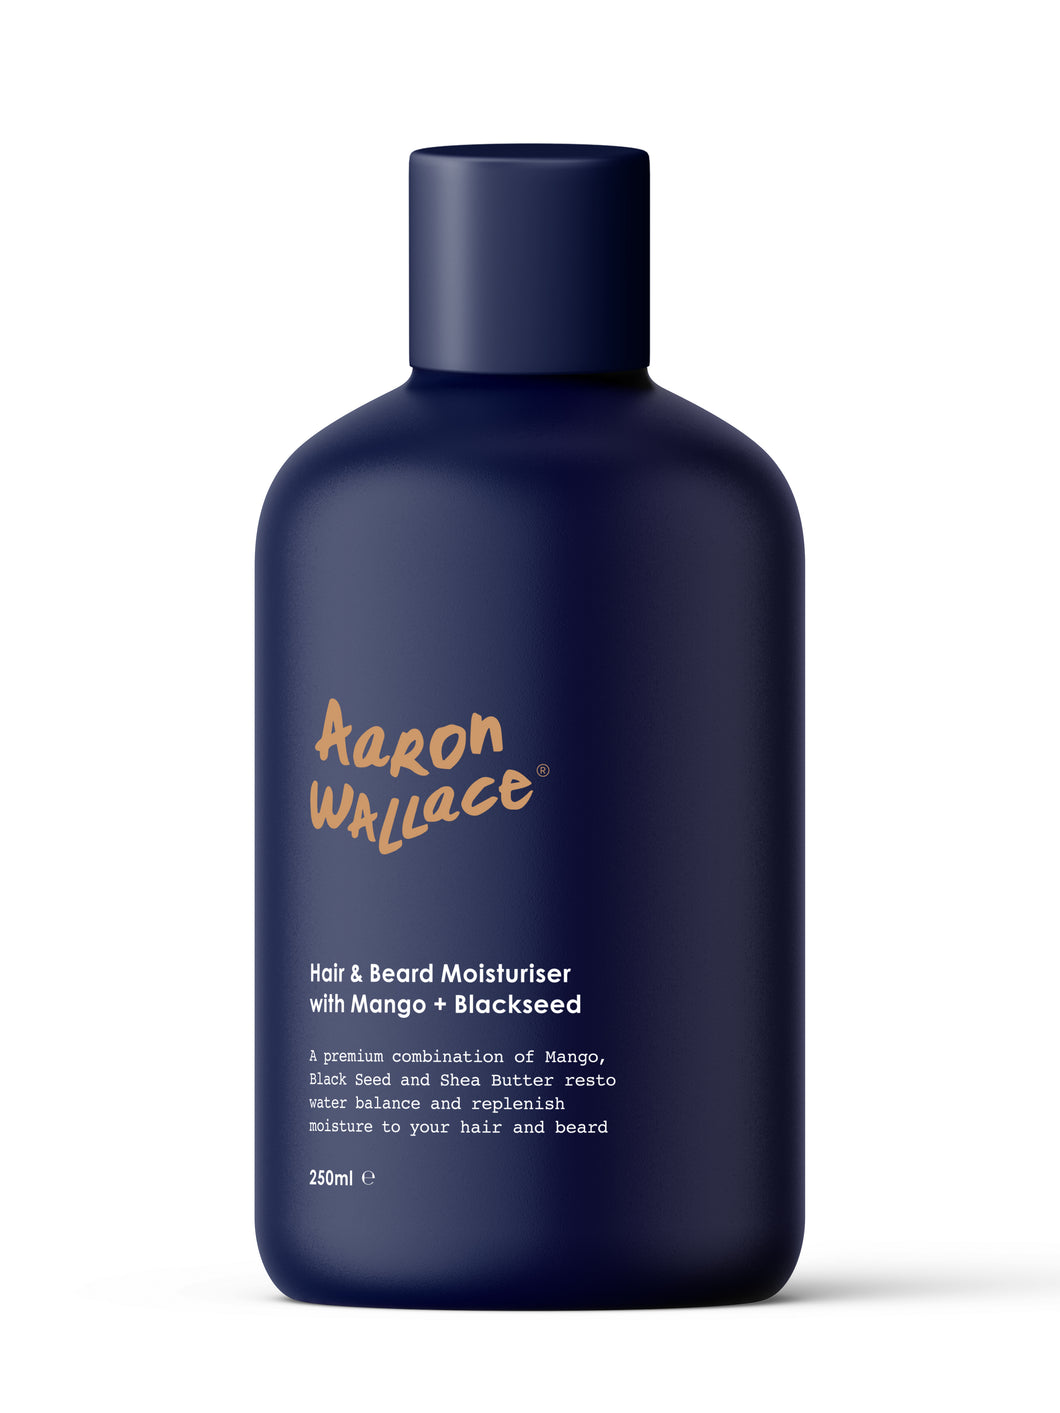 Aaron Wallace Hair and Beard Moisturiser product bottle